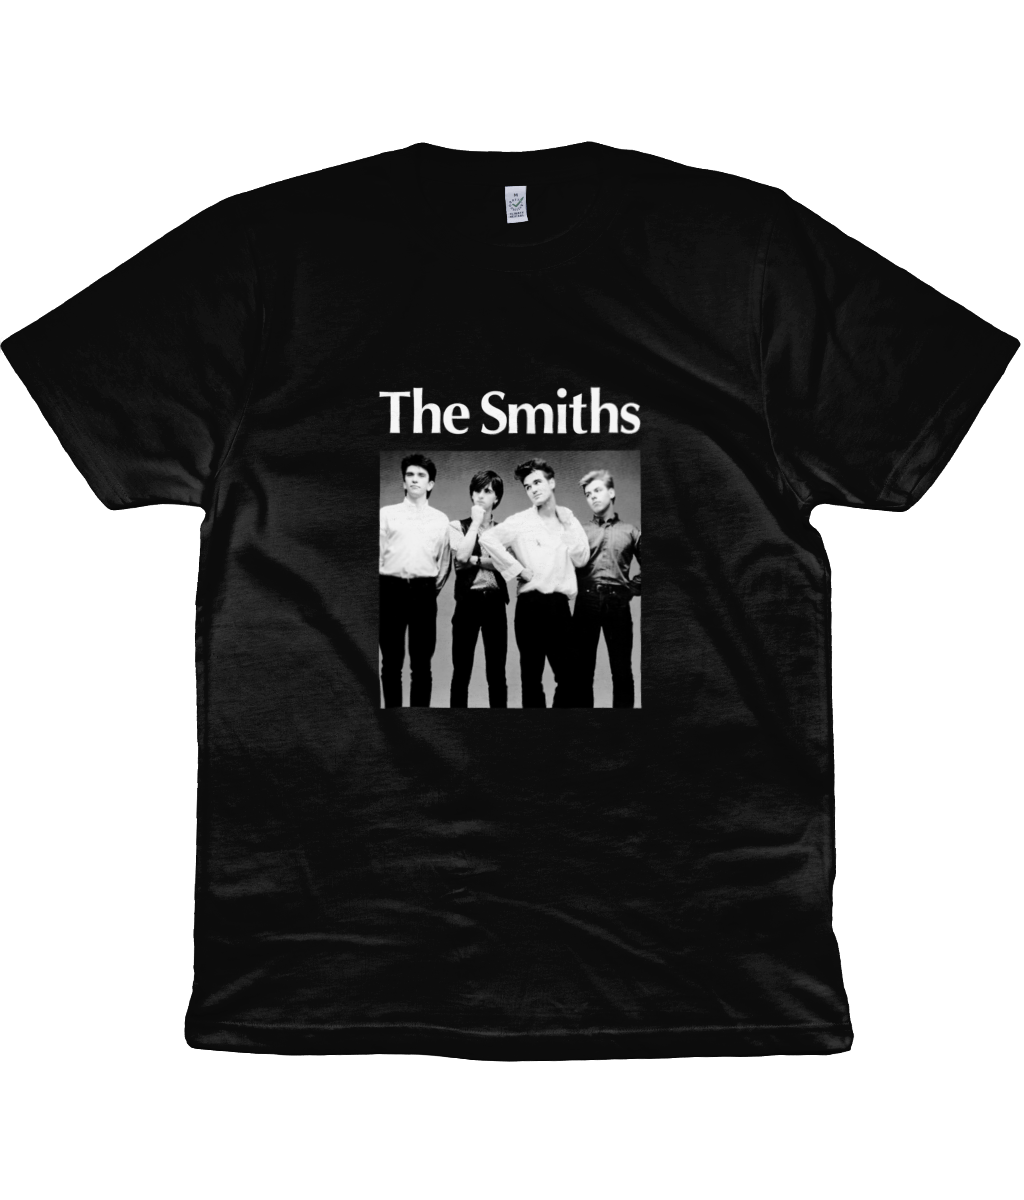 The Smiths - Promo Photo